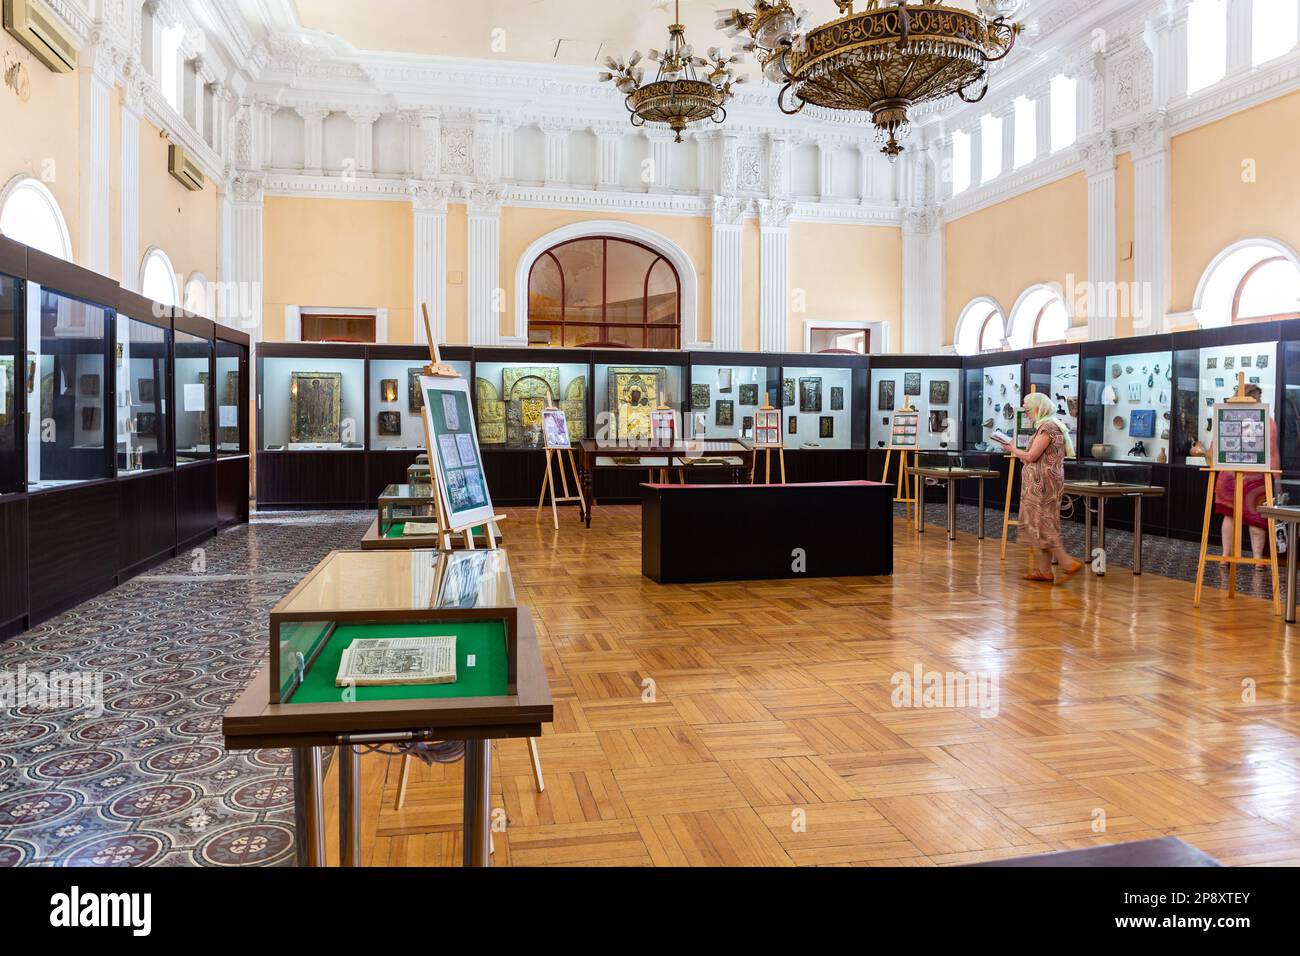 Kutaisi, Georgia, 04.06.21. Niko Berdzenishvili Kutaisi State History Museum, main exhibition room with glass old-style showcases in classical buildin Stock Photo